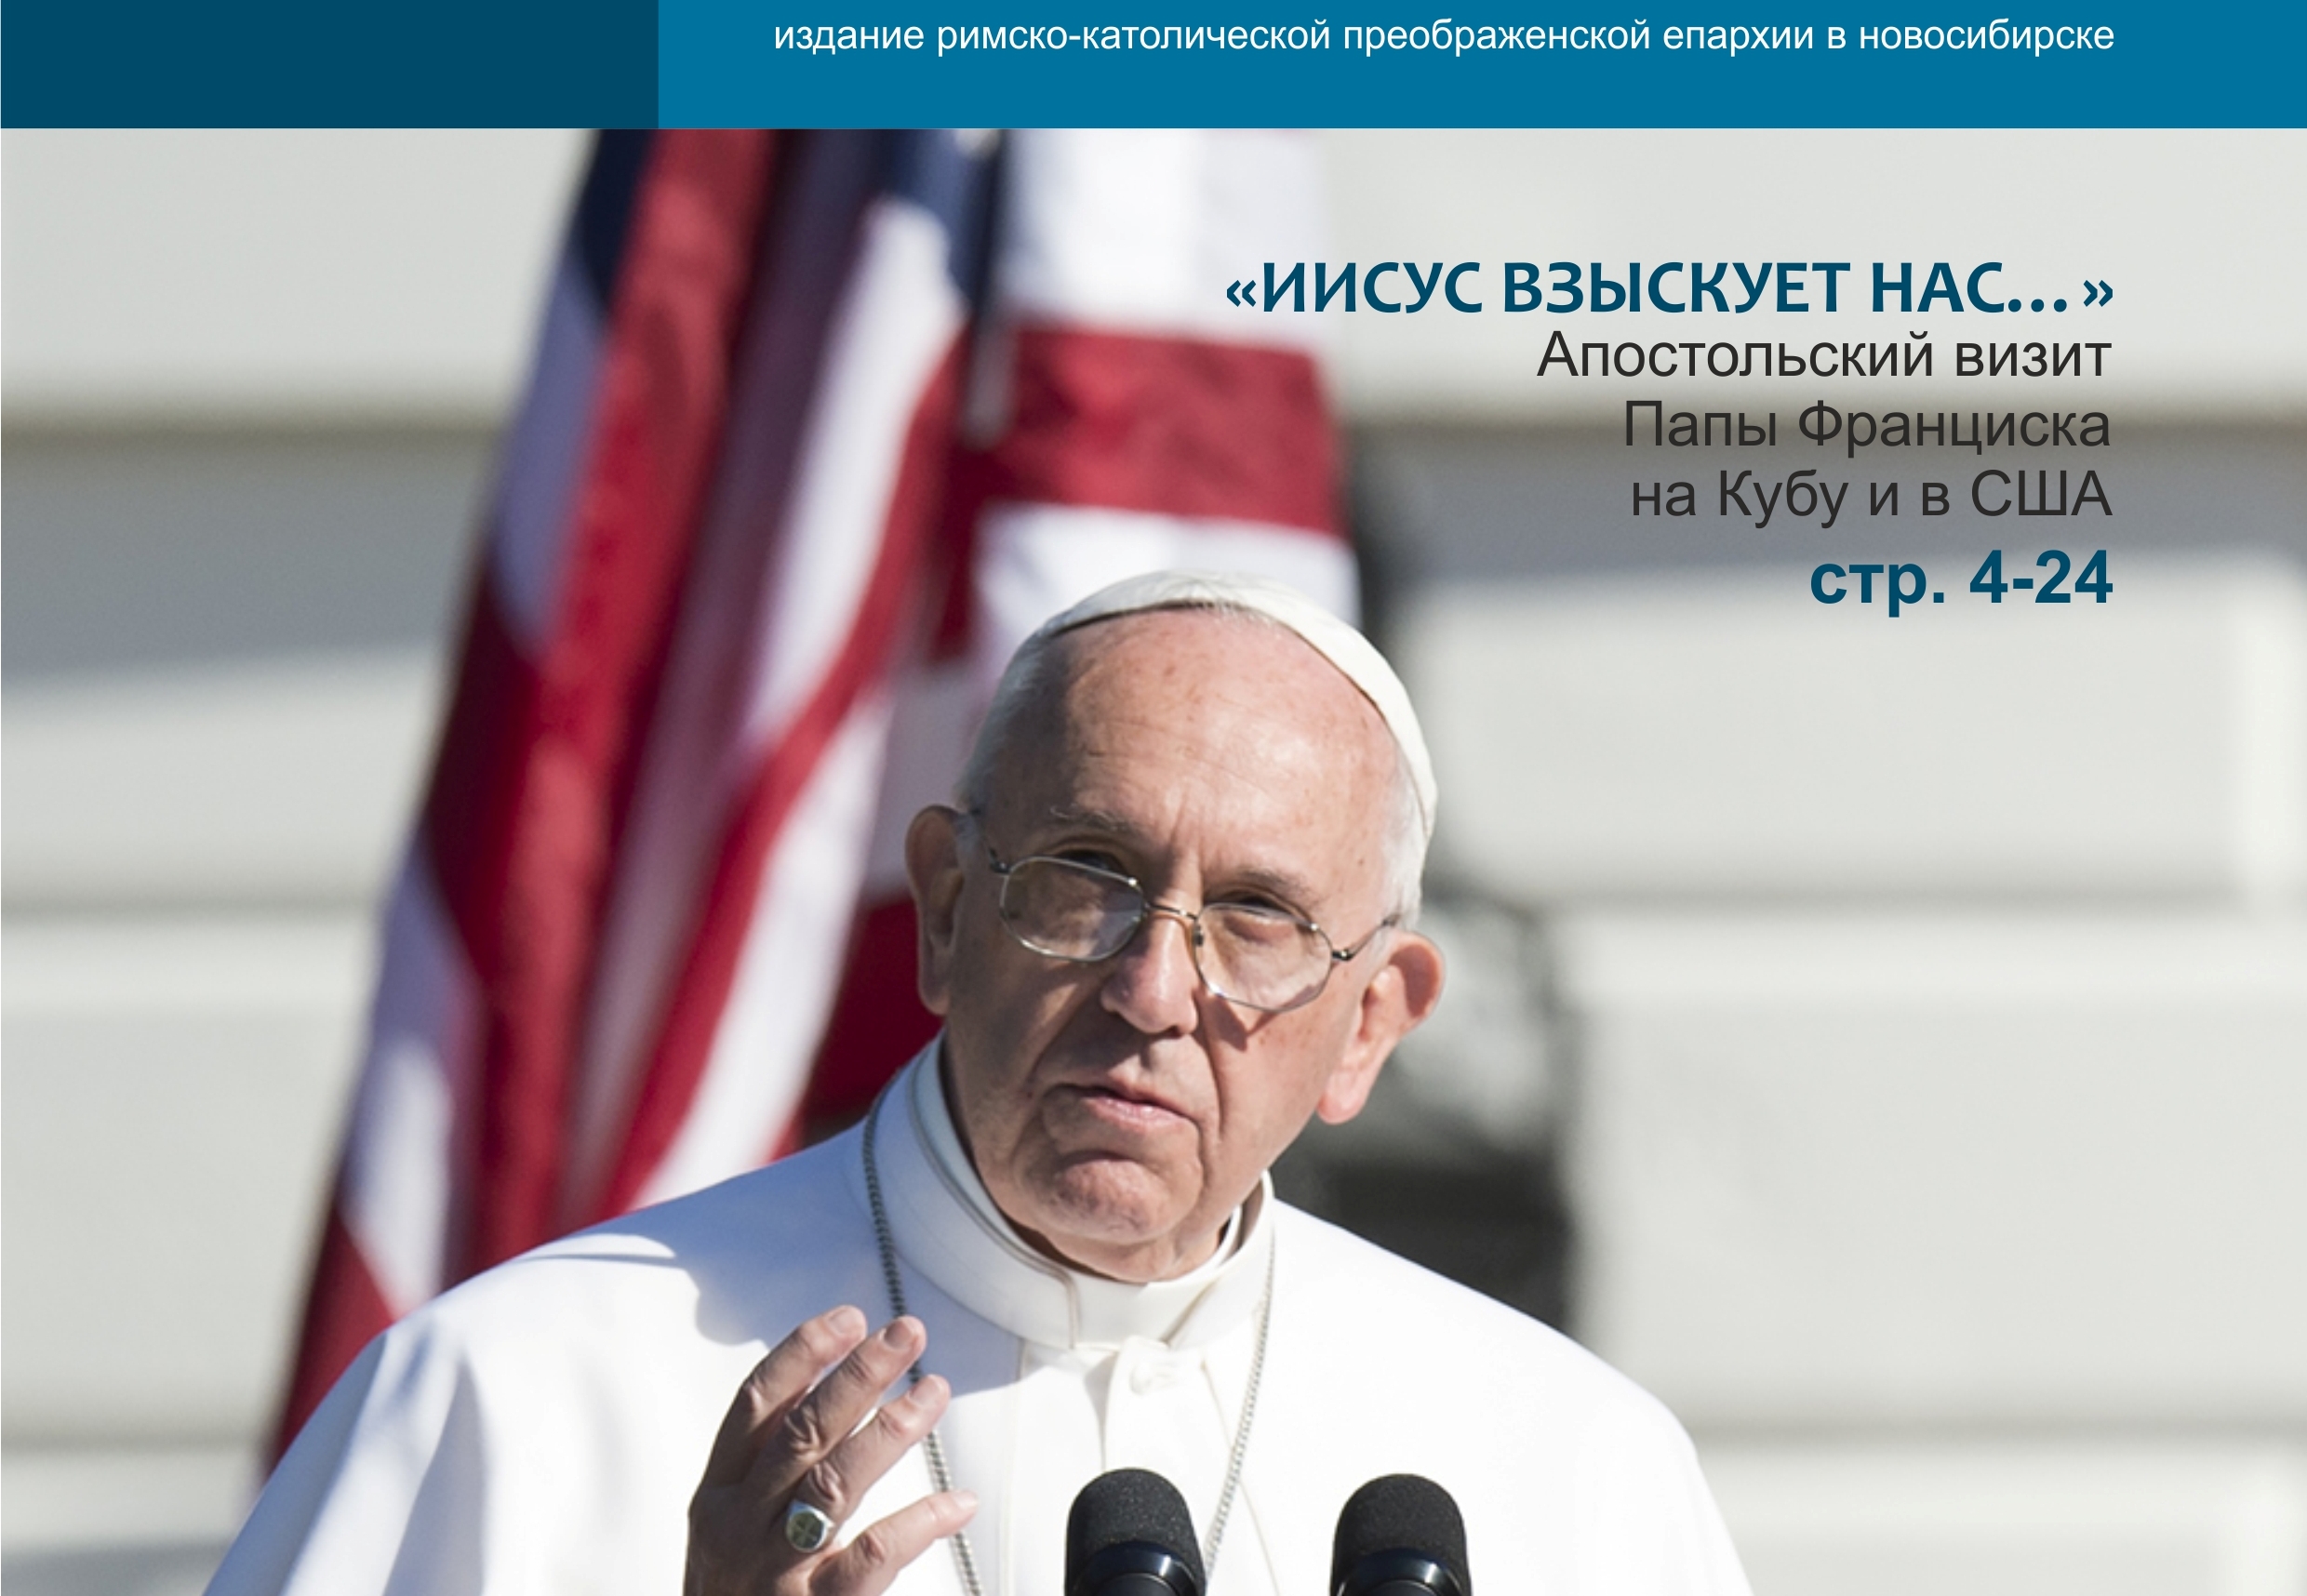 Вышел из печати свежий номер «Сибирской католической газеты»